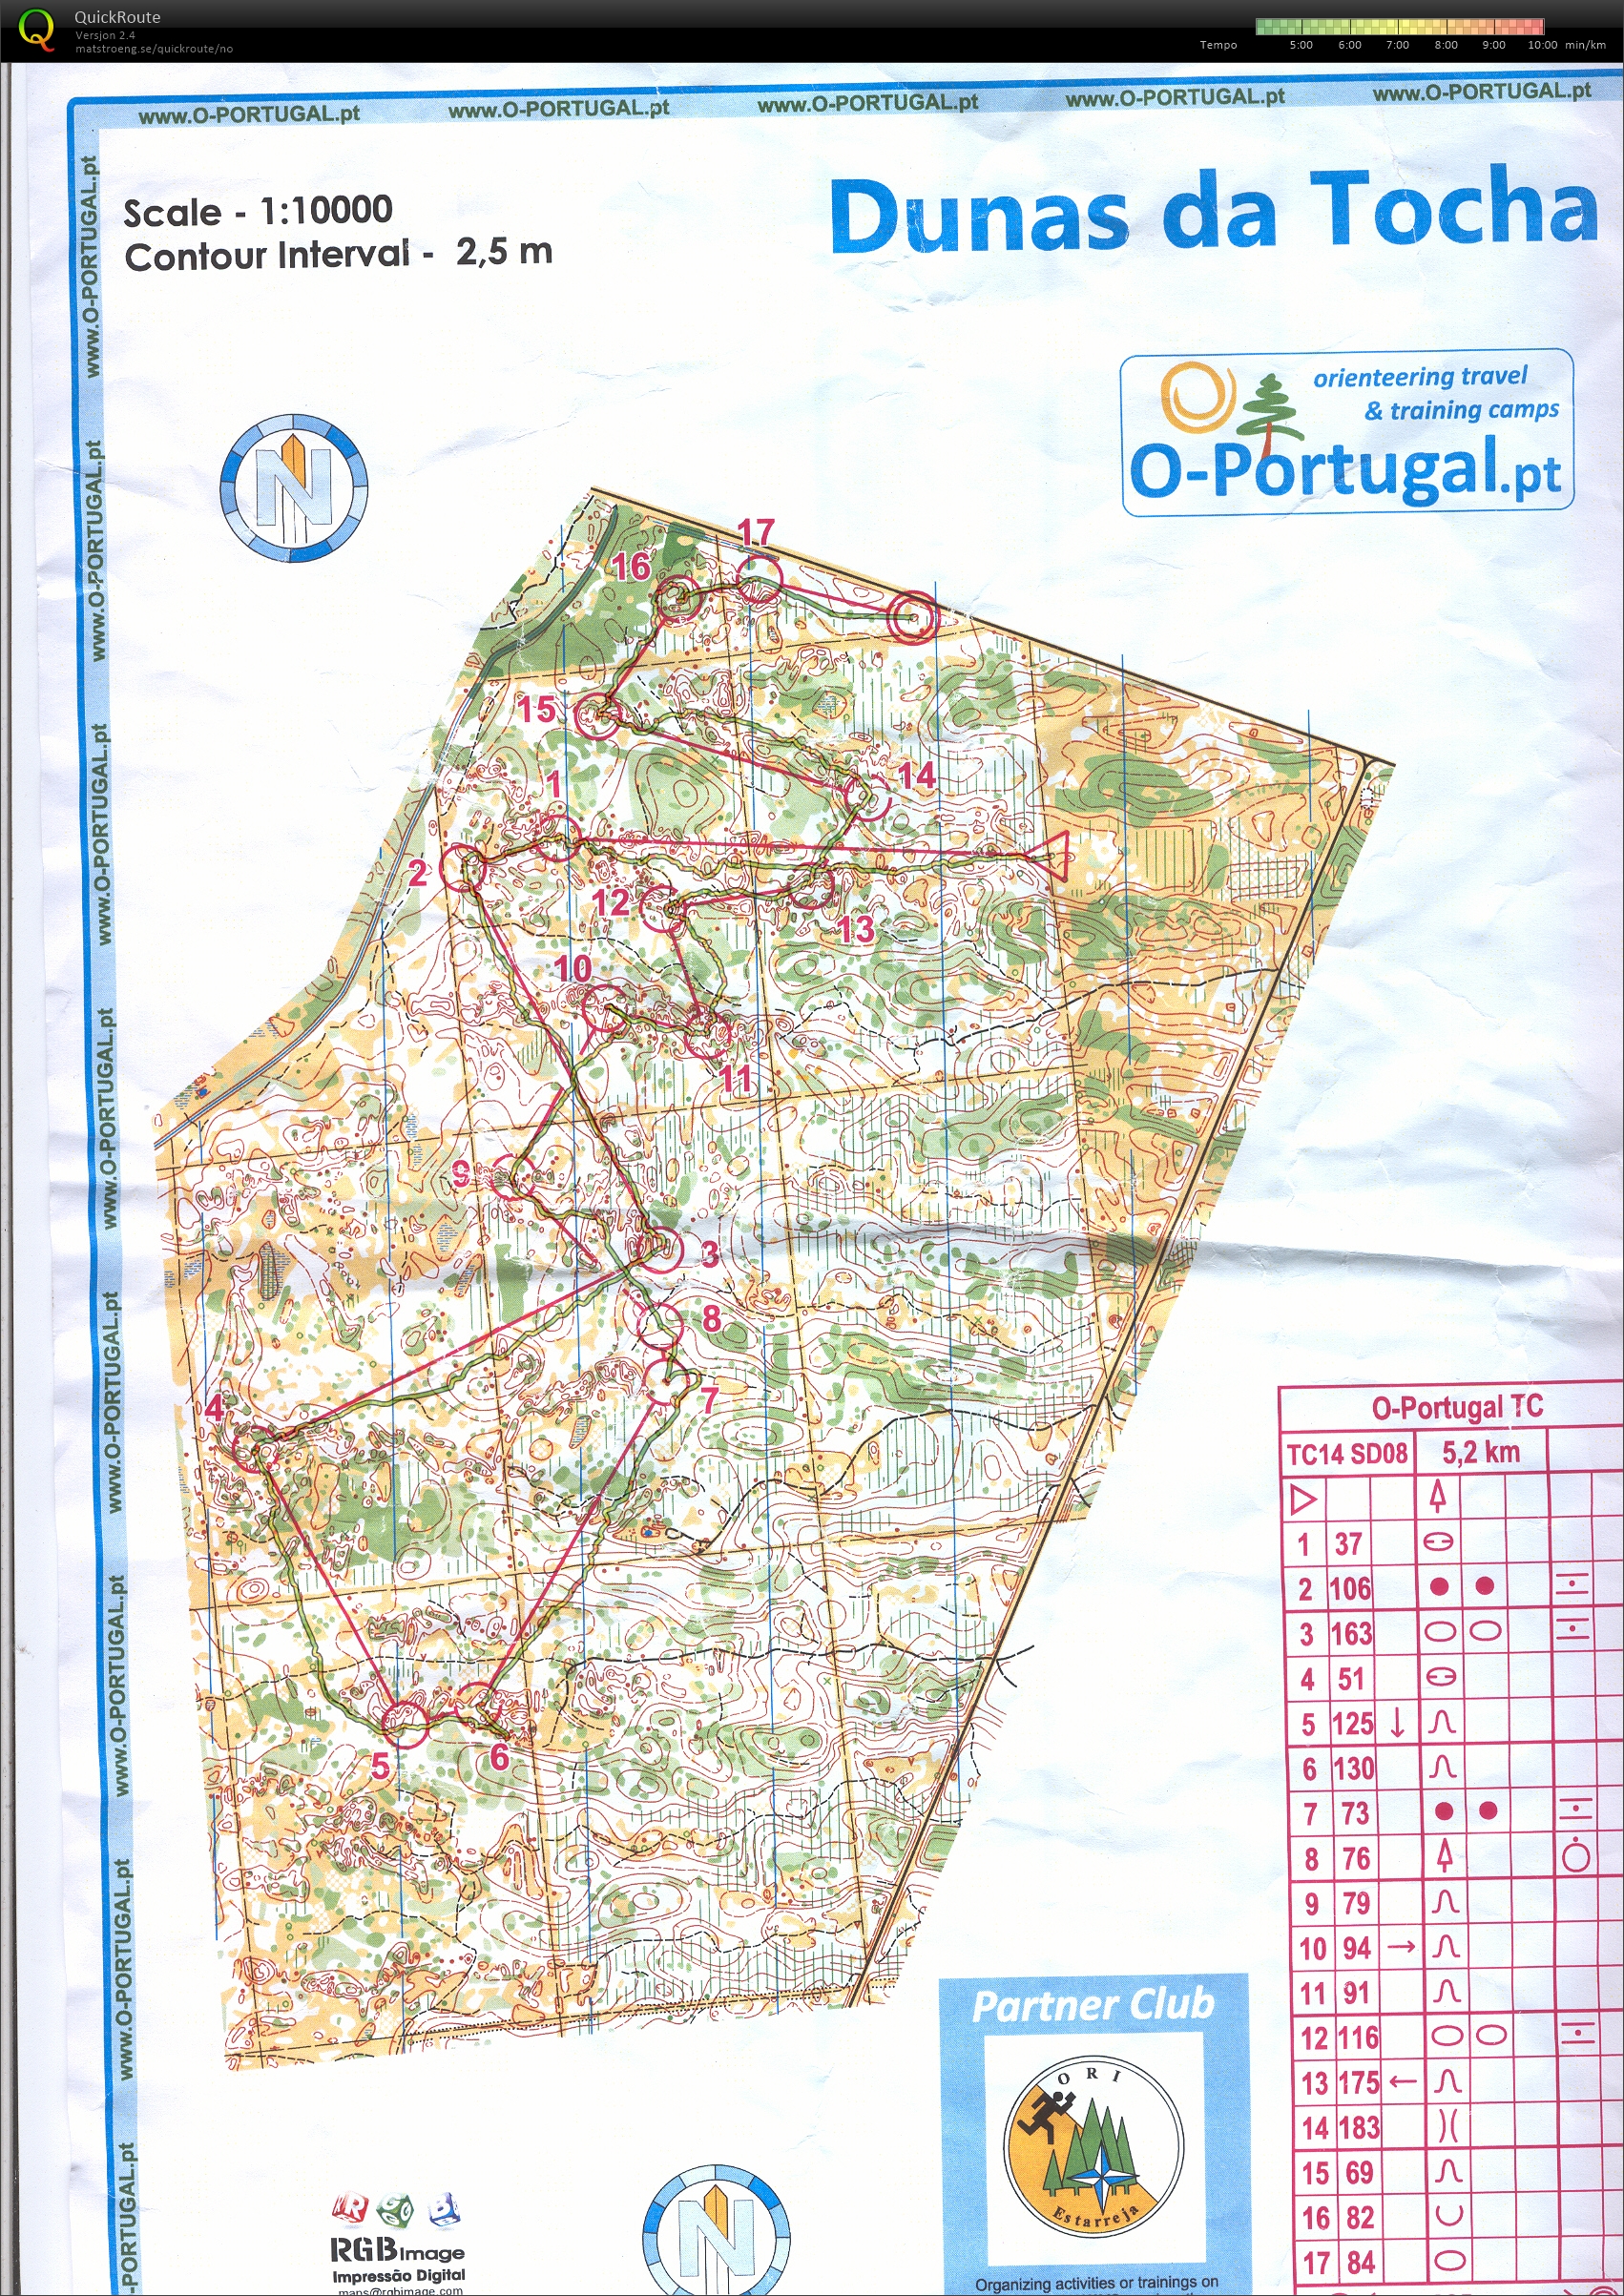 Portugal økt 6 (22.01.2014)